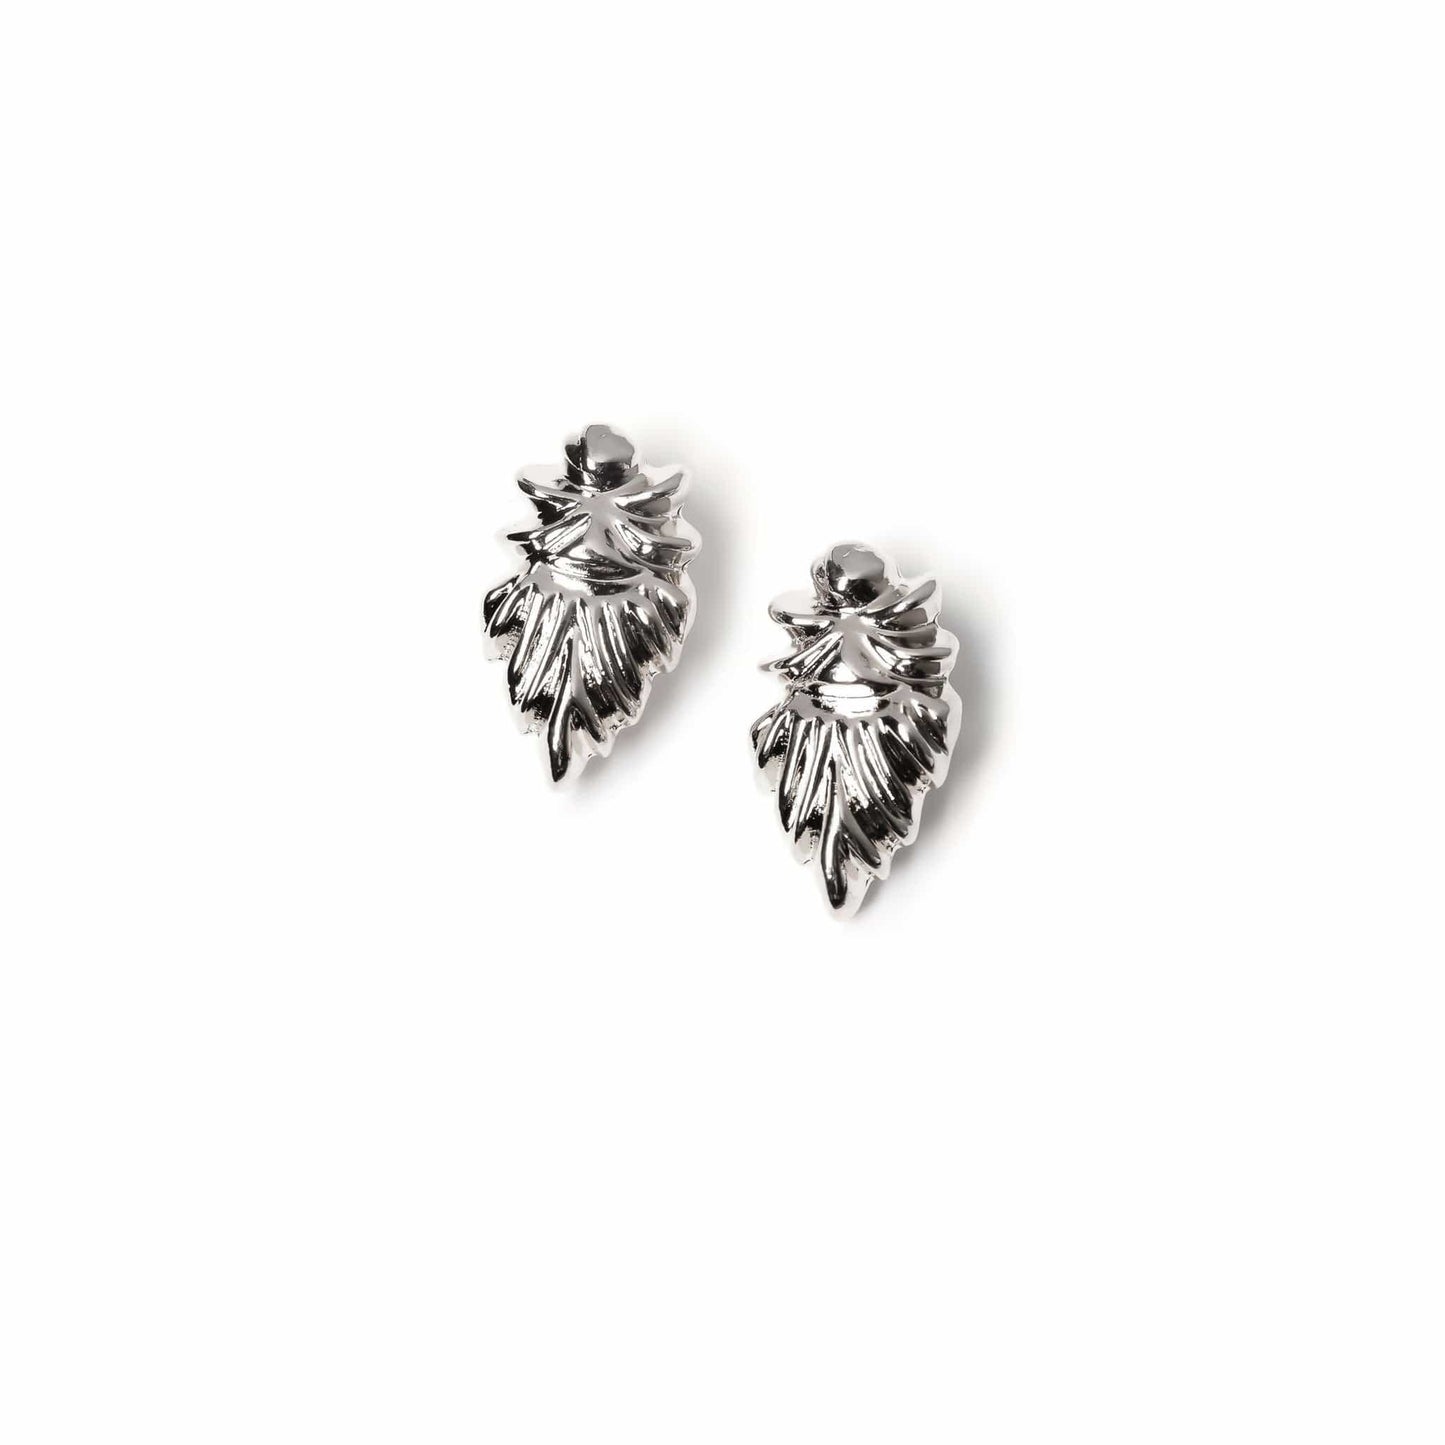 VUE by SEK LLC Earrings rhodium May earrings